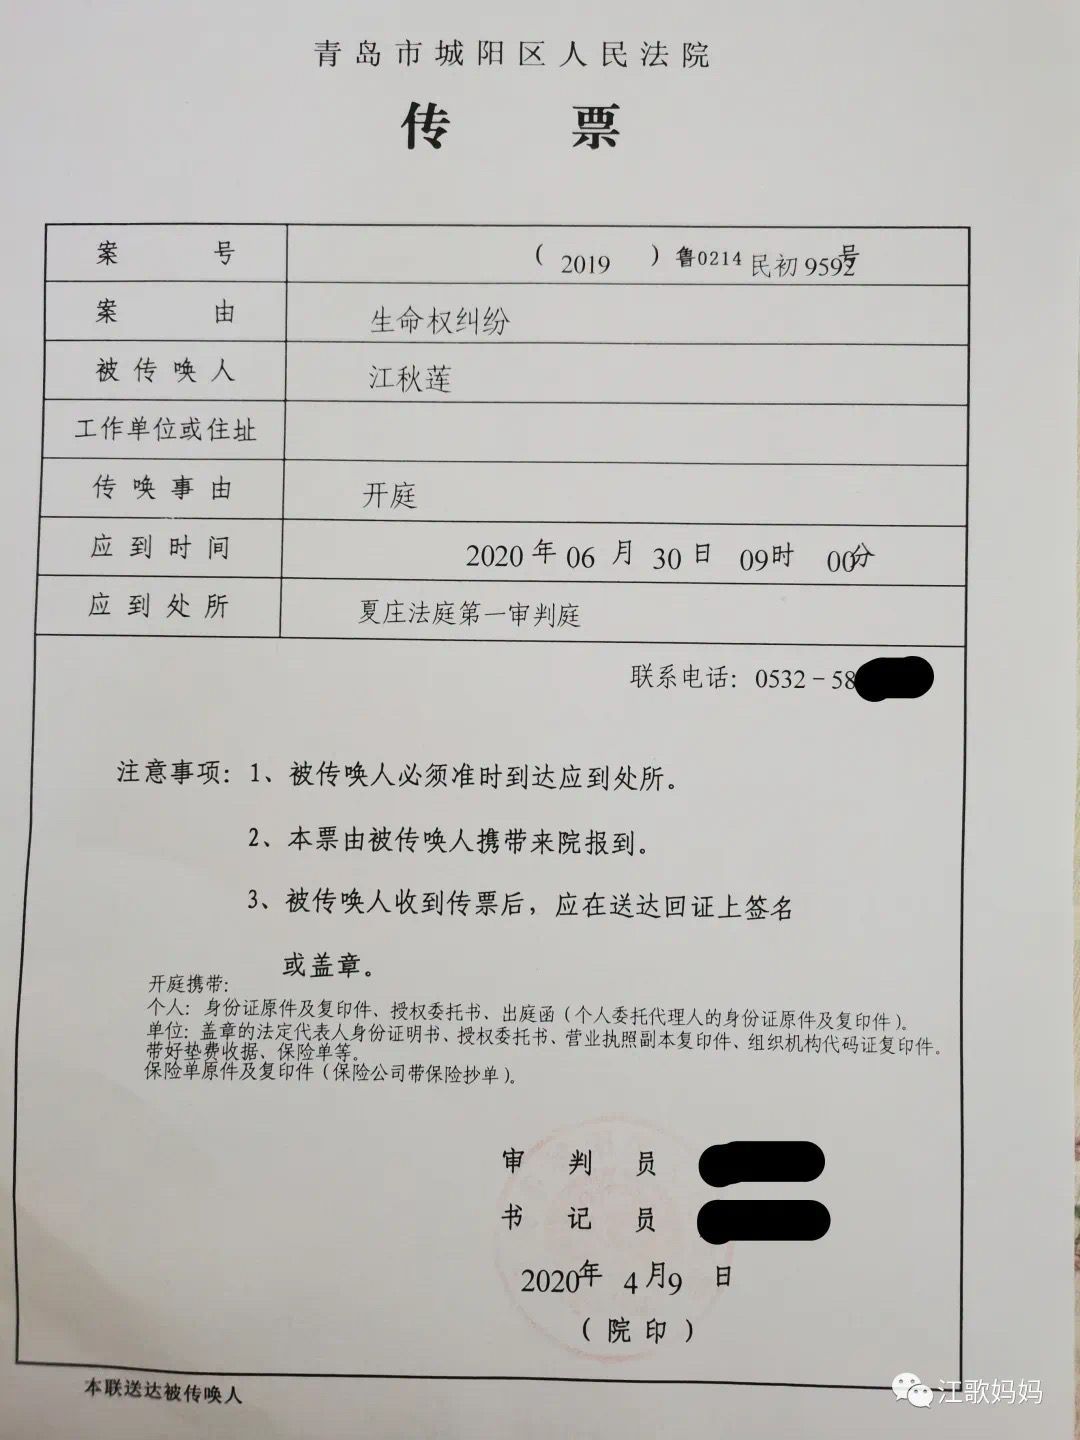 江歌母亲以生命权纠纷为由起诉刘鑫 将于6月30日开庭